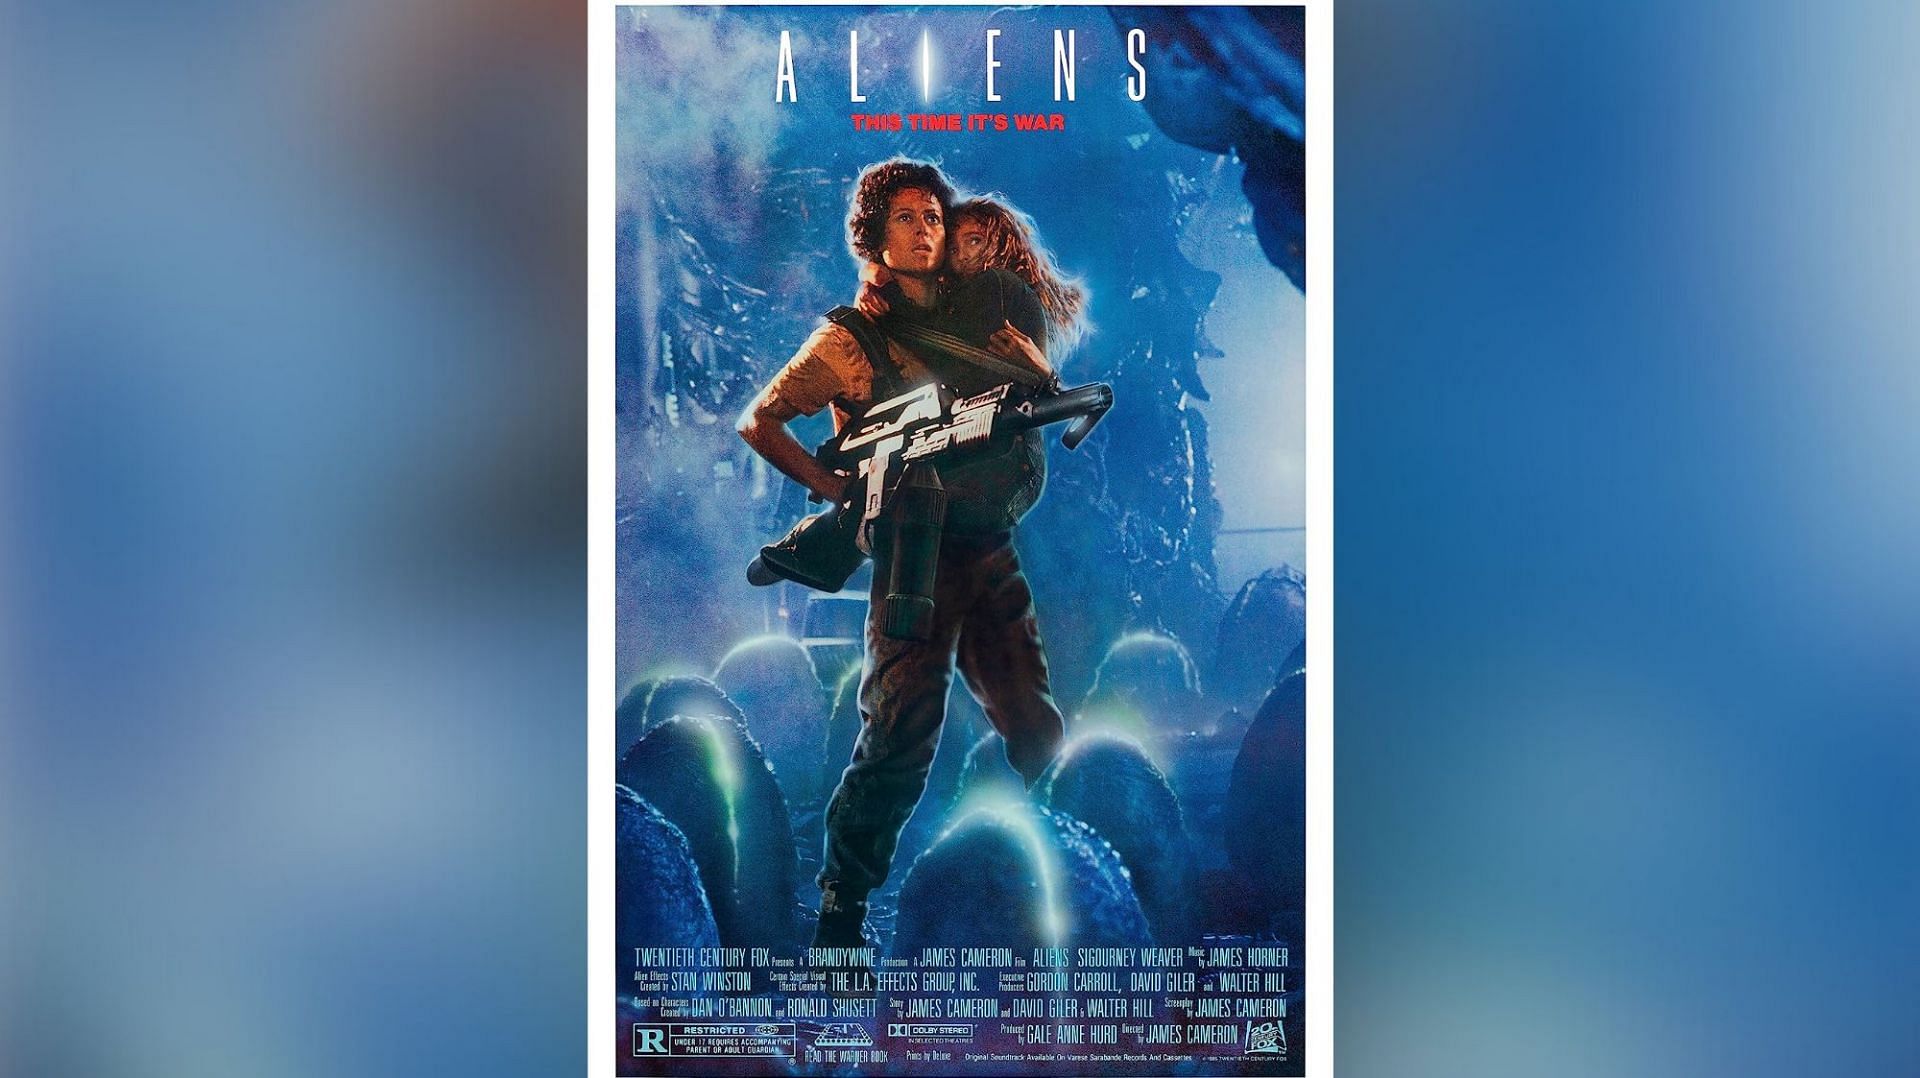 Aliens (Image via 20th Century Fox)